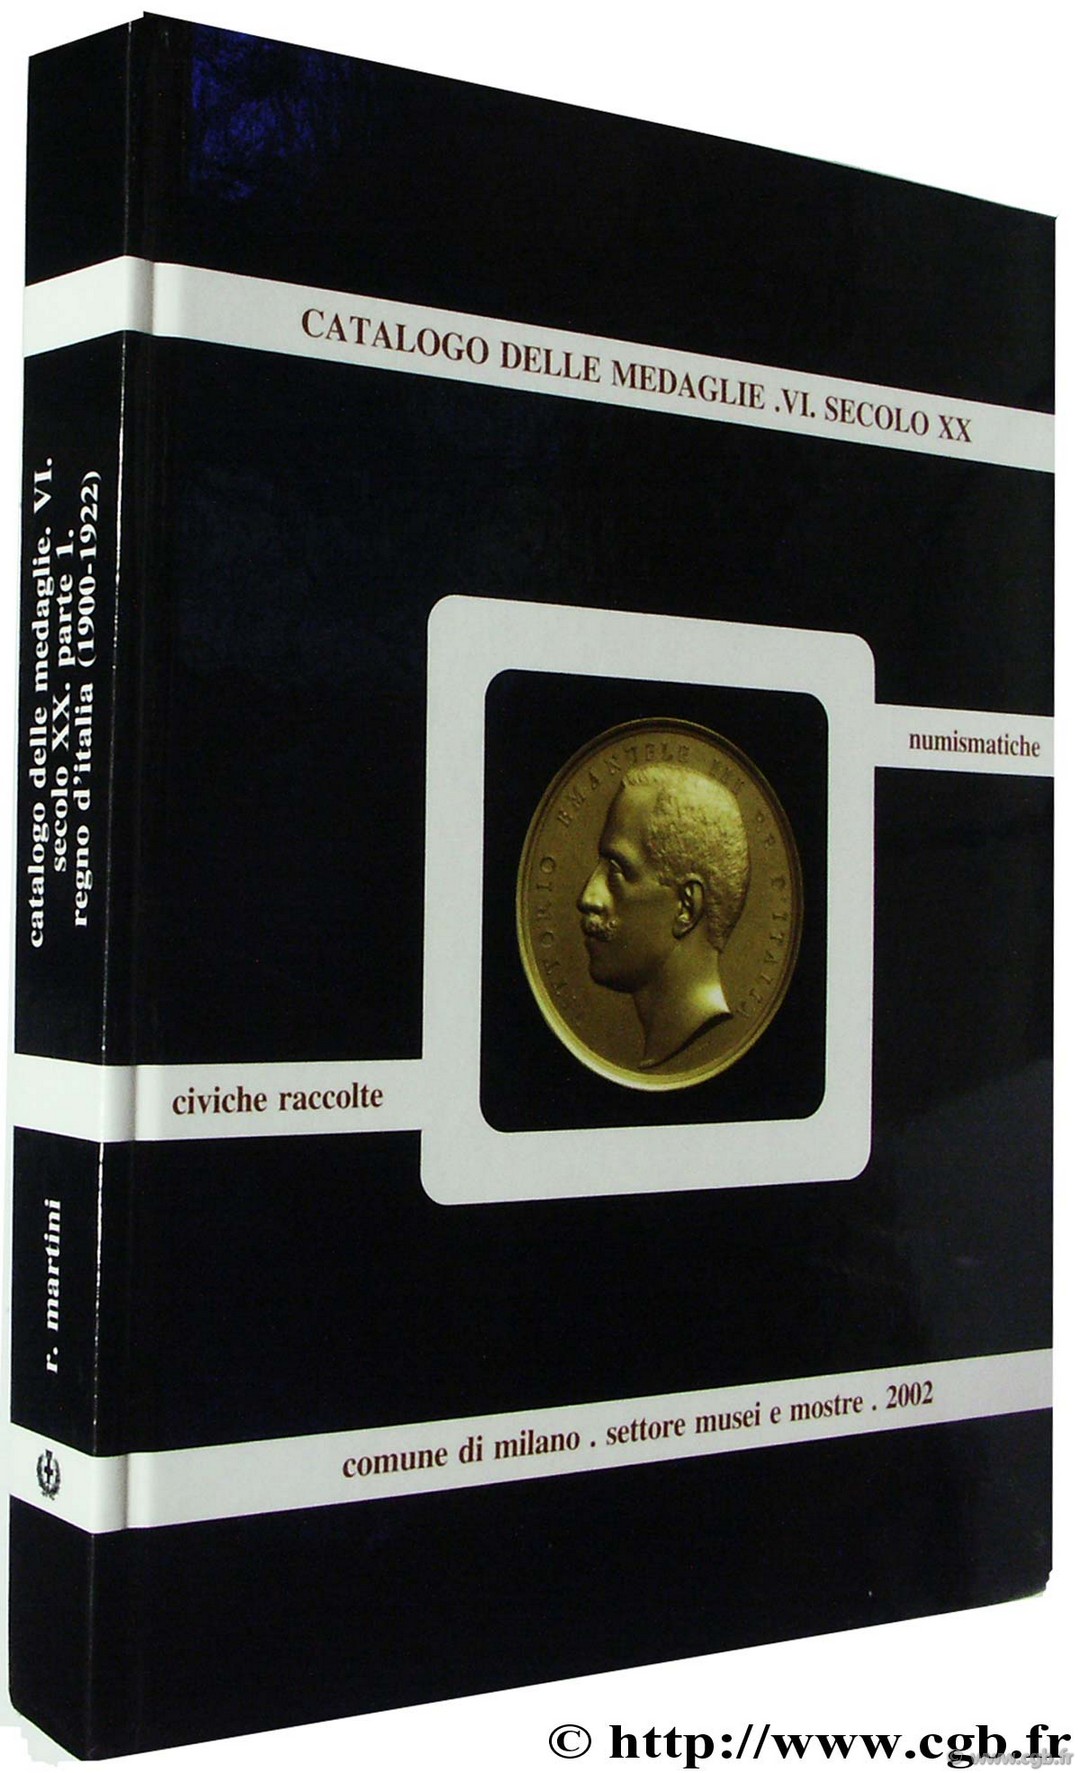 Catalogo delle Medaglie delle civiche raccolte numismatiche. vol VI Secolo XX MARTINI R.